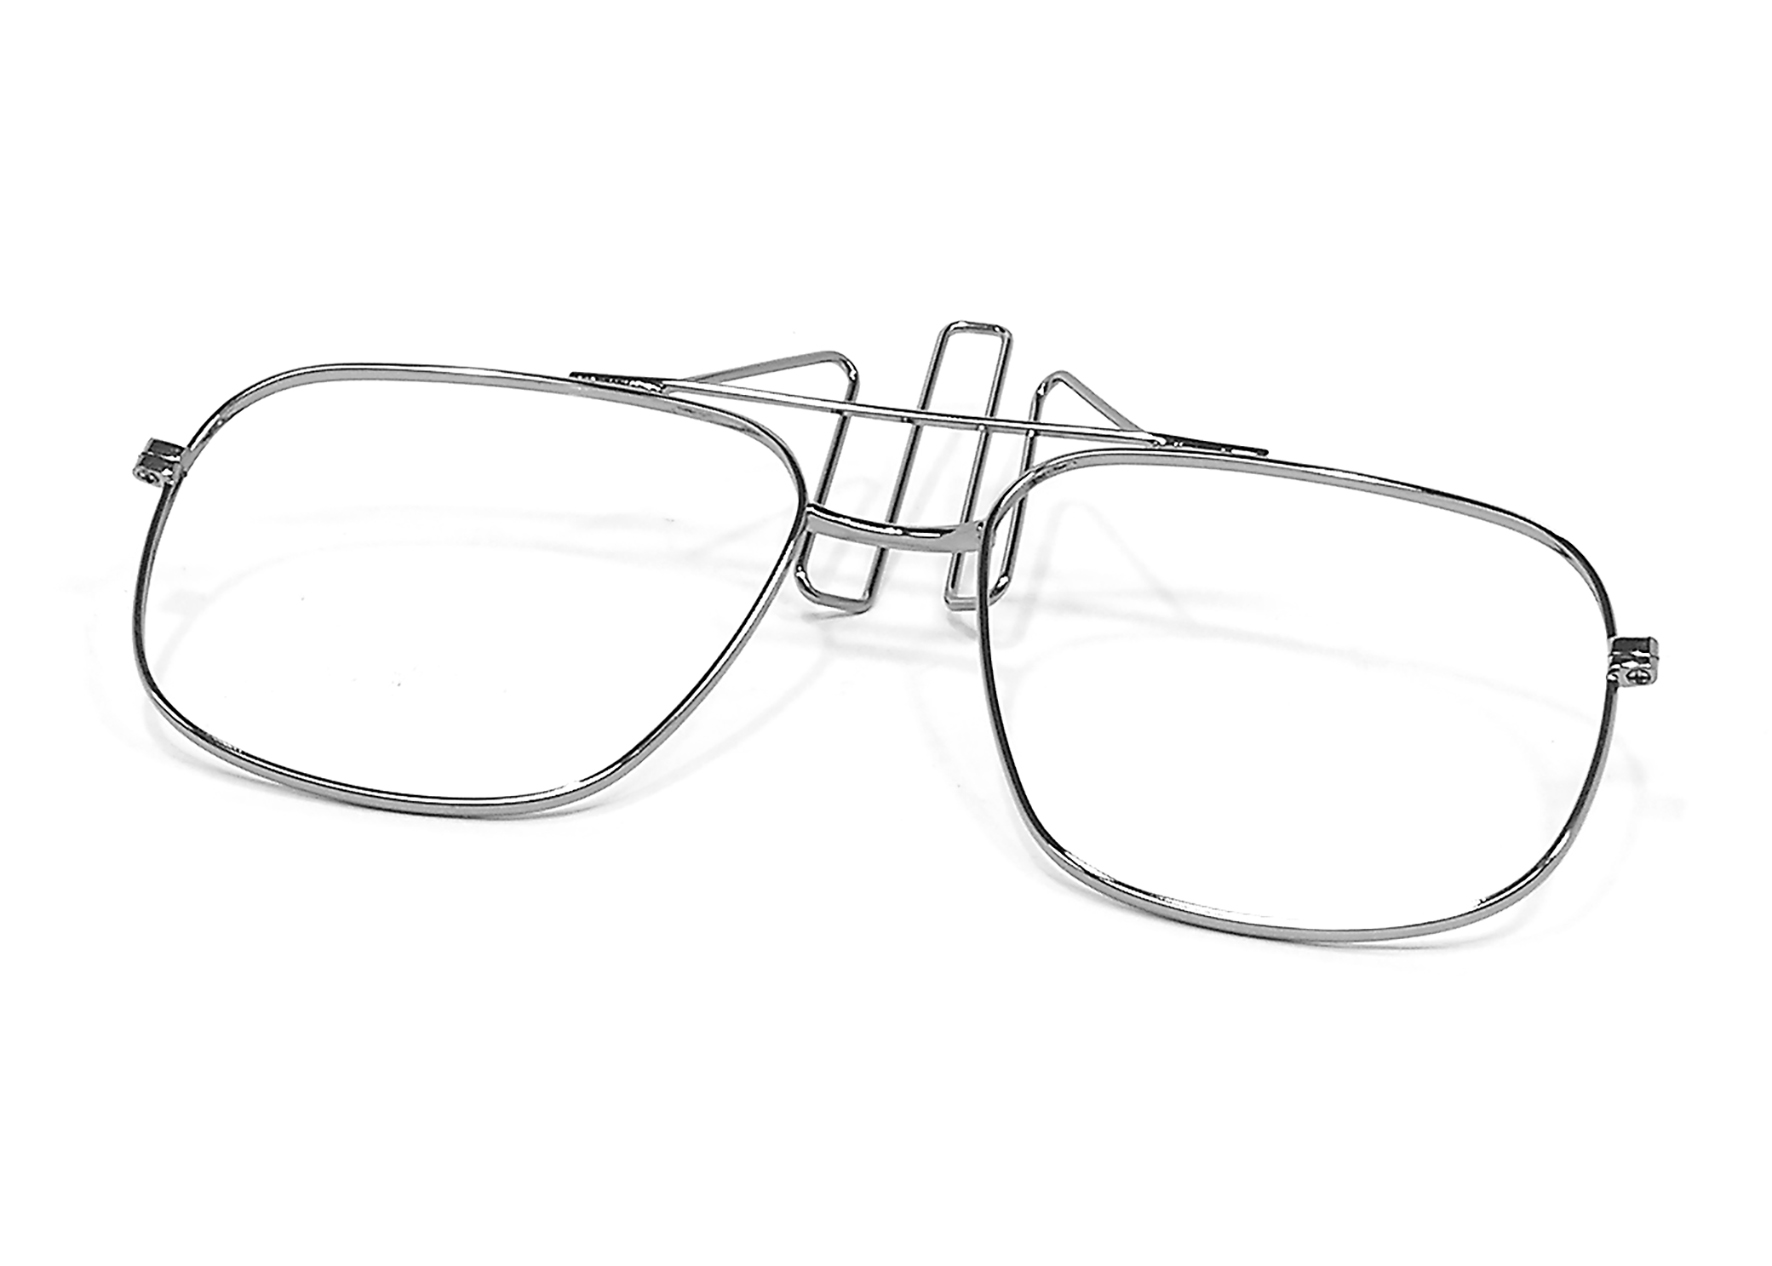 Silberfarbenes Brillengestell ohne Gläser für die Verwendung mit einer Vollmaske